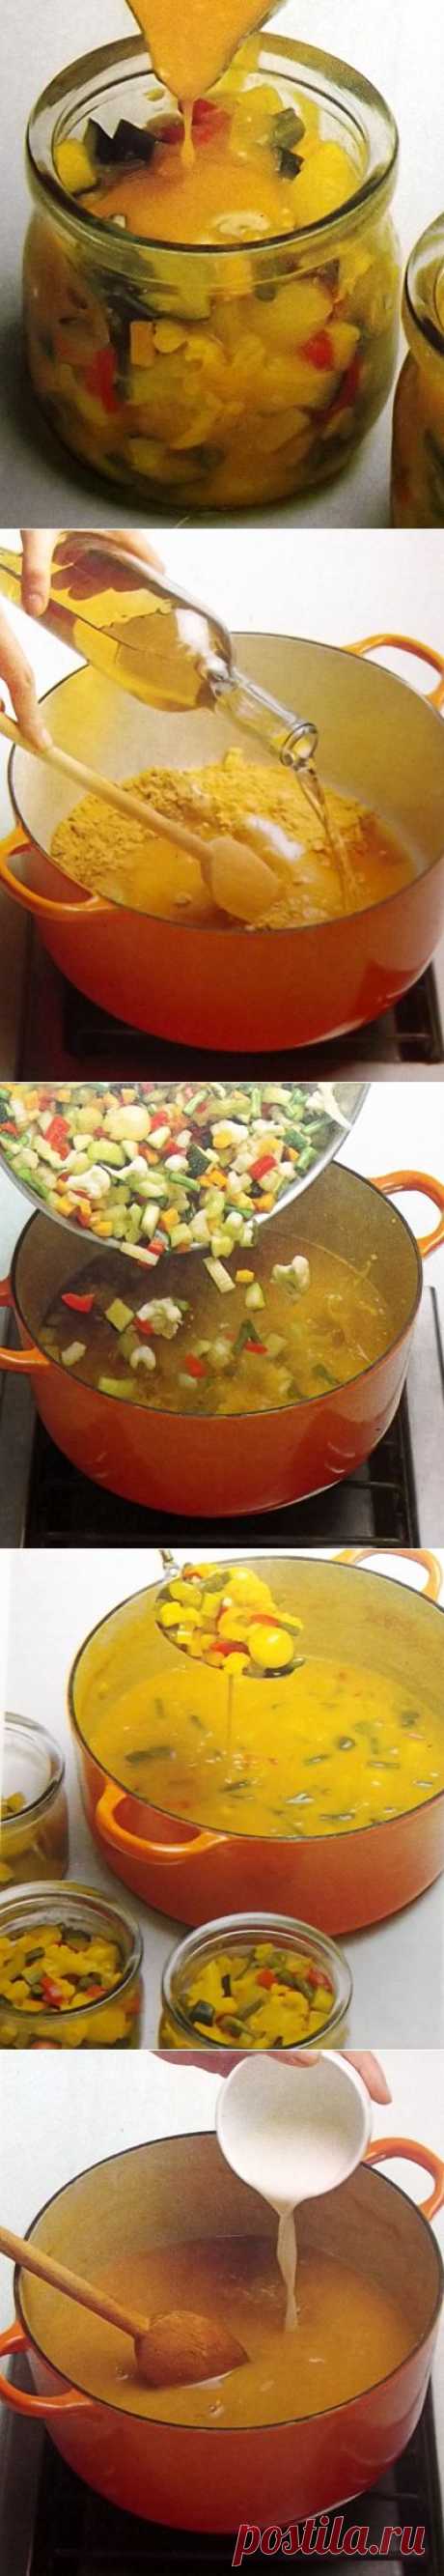 Как приготовить овощи под горчичным маринадом. Фото-рецепт. | Хозяева дома.